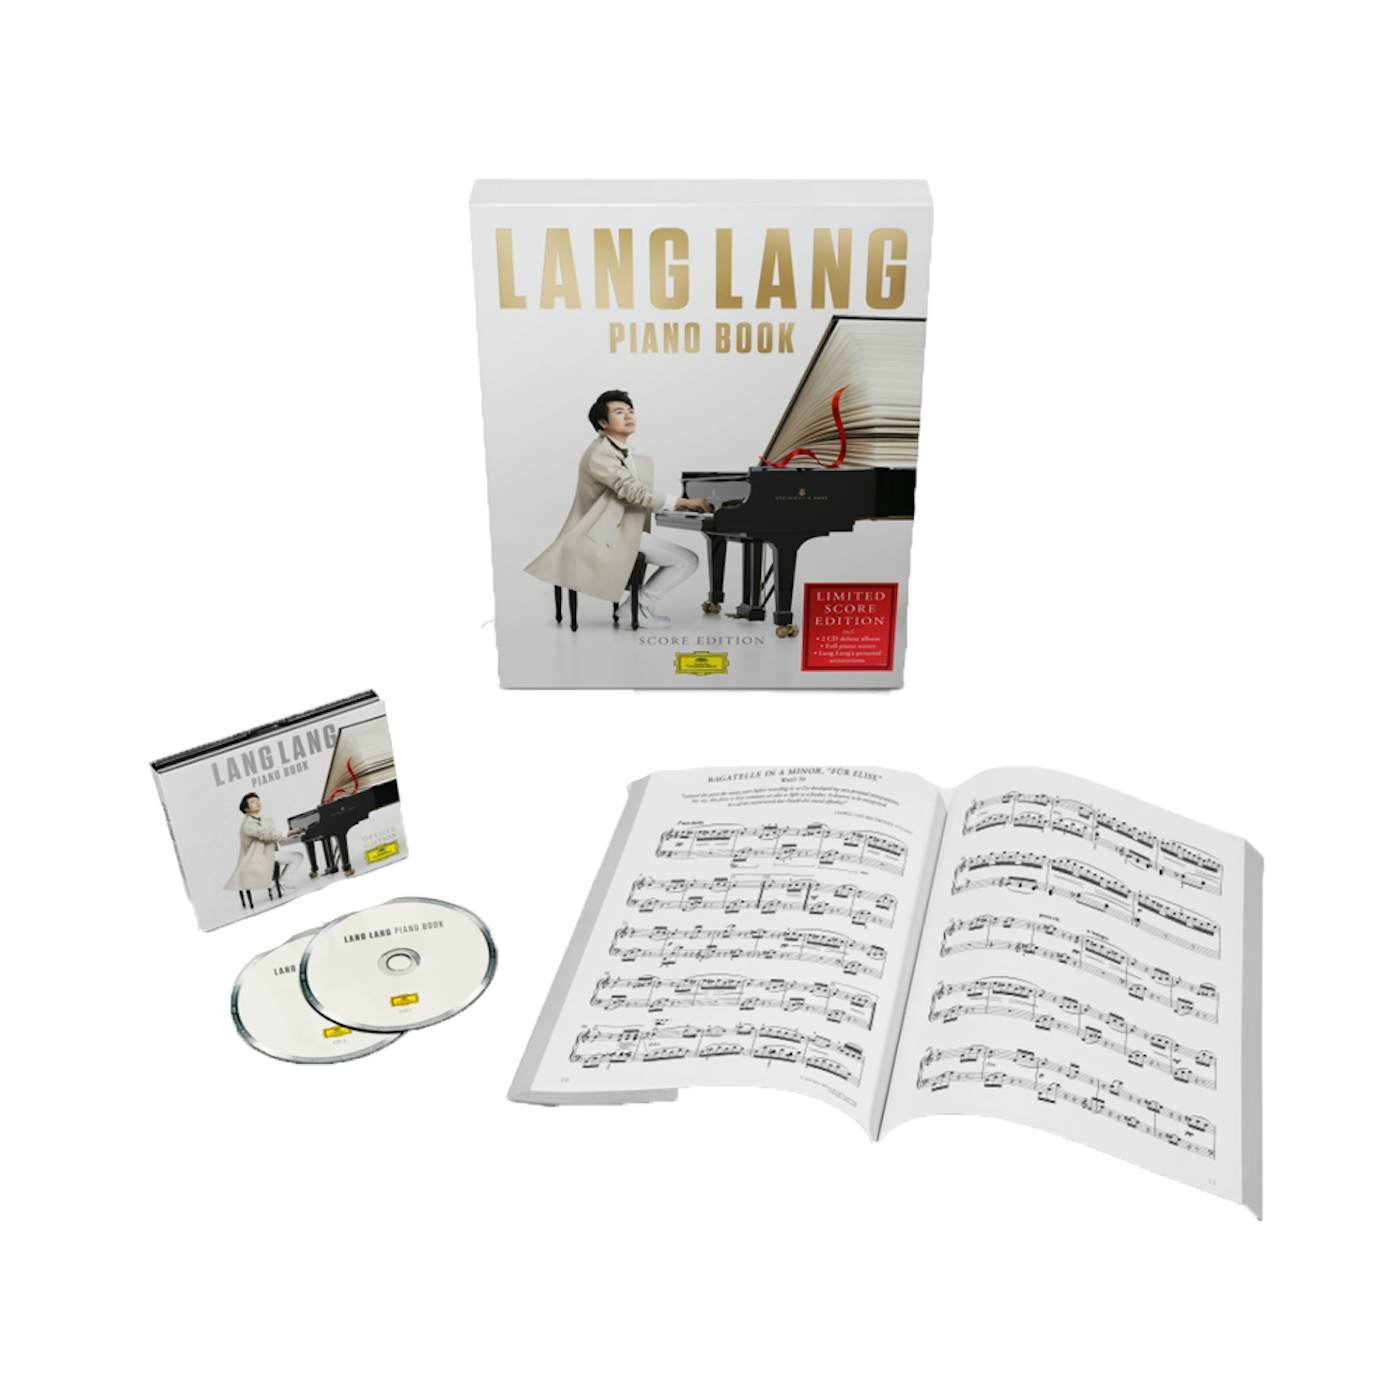 Lang Lang Piano Book Super Deluxe 2CD + Deluxe Digital Album